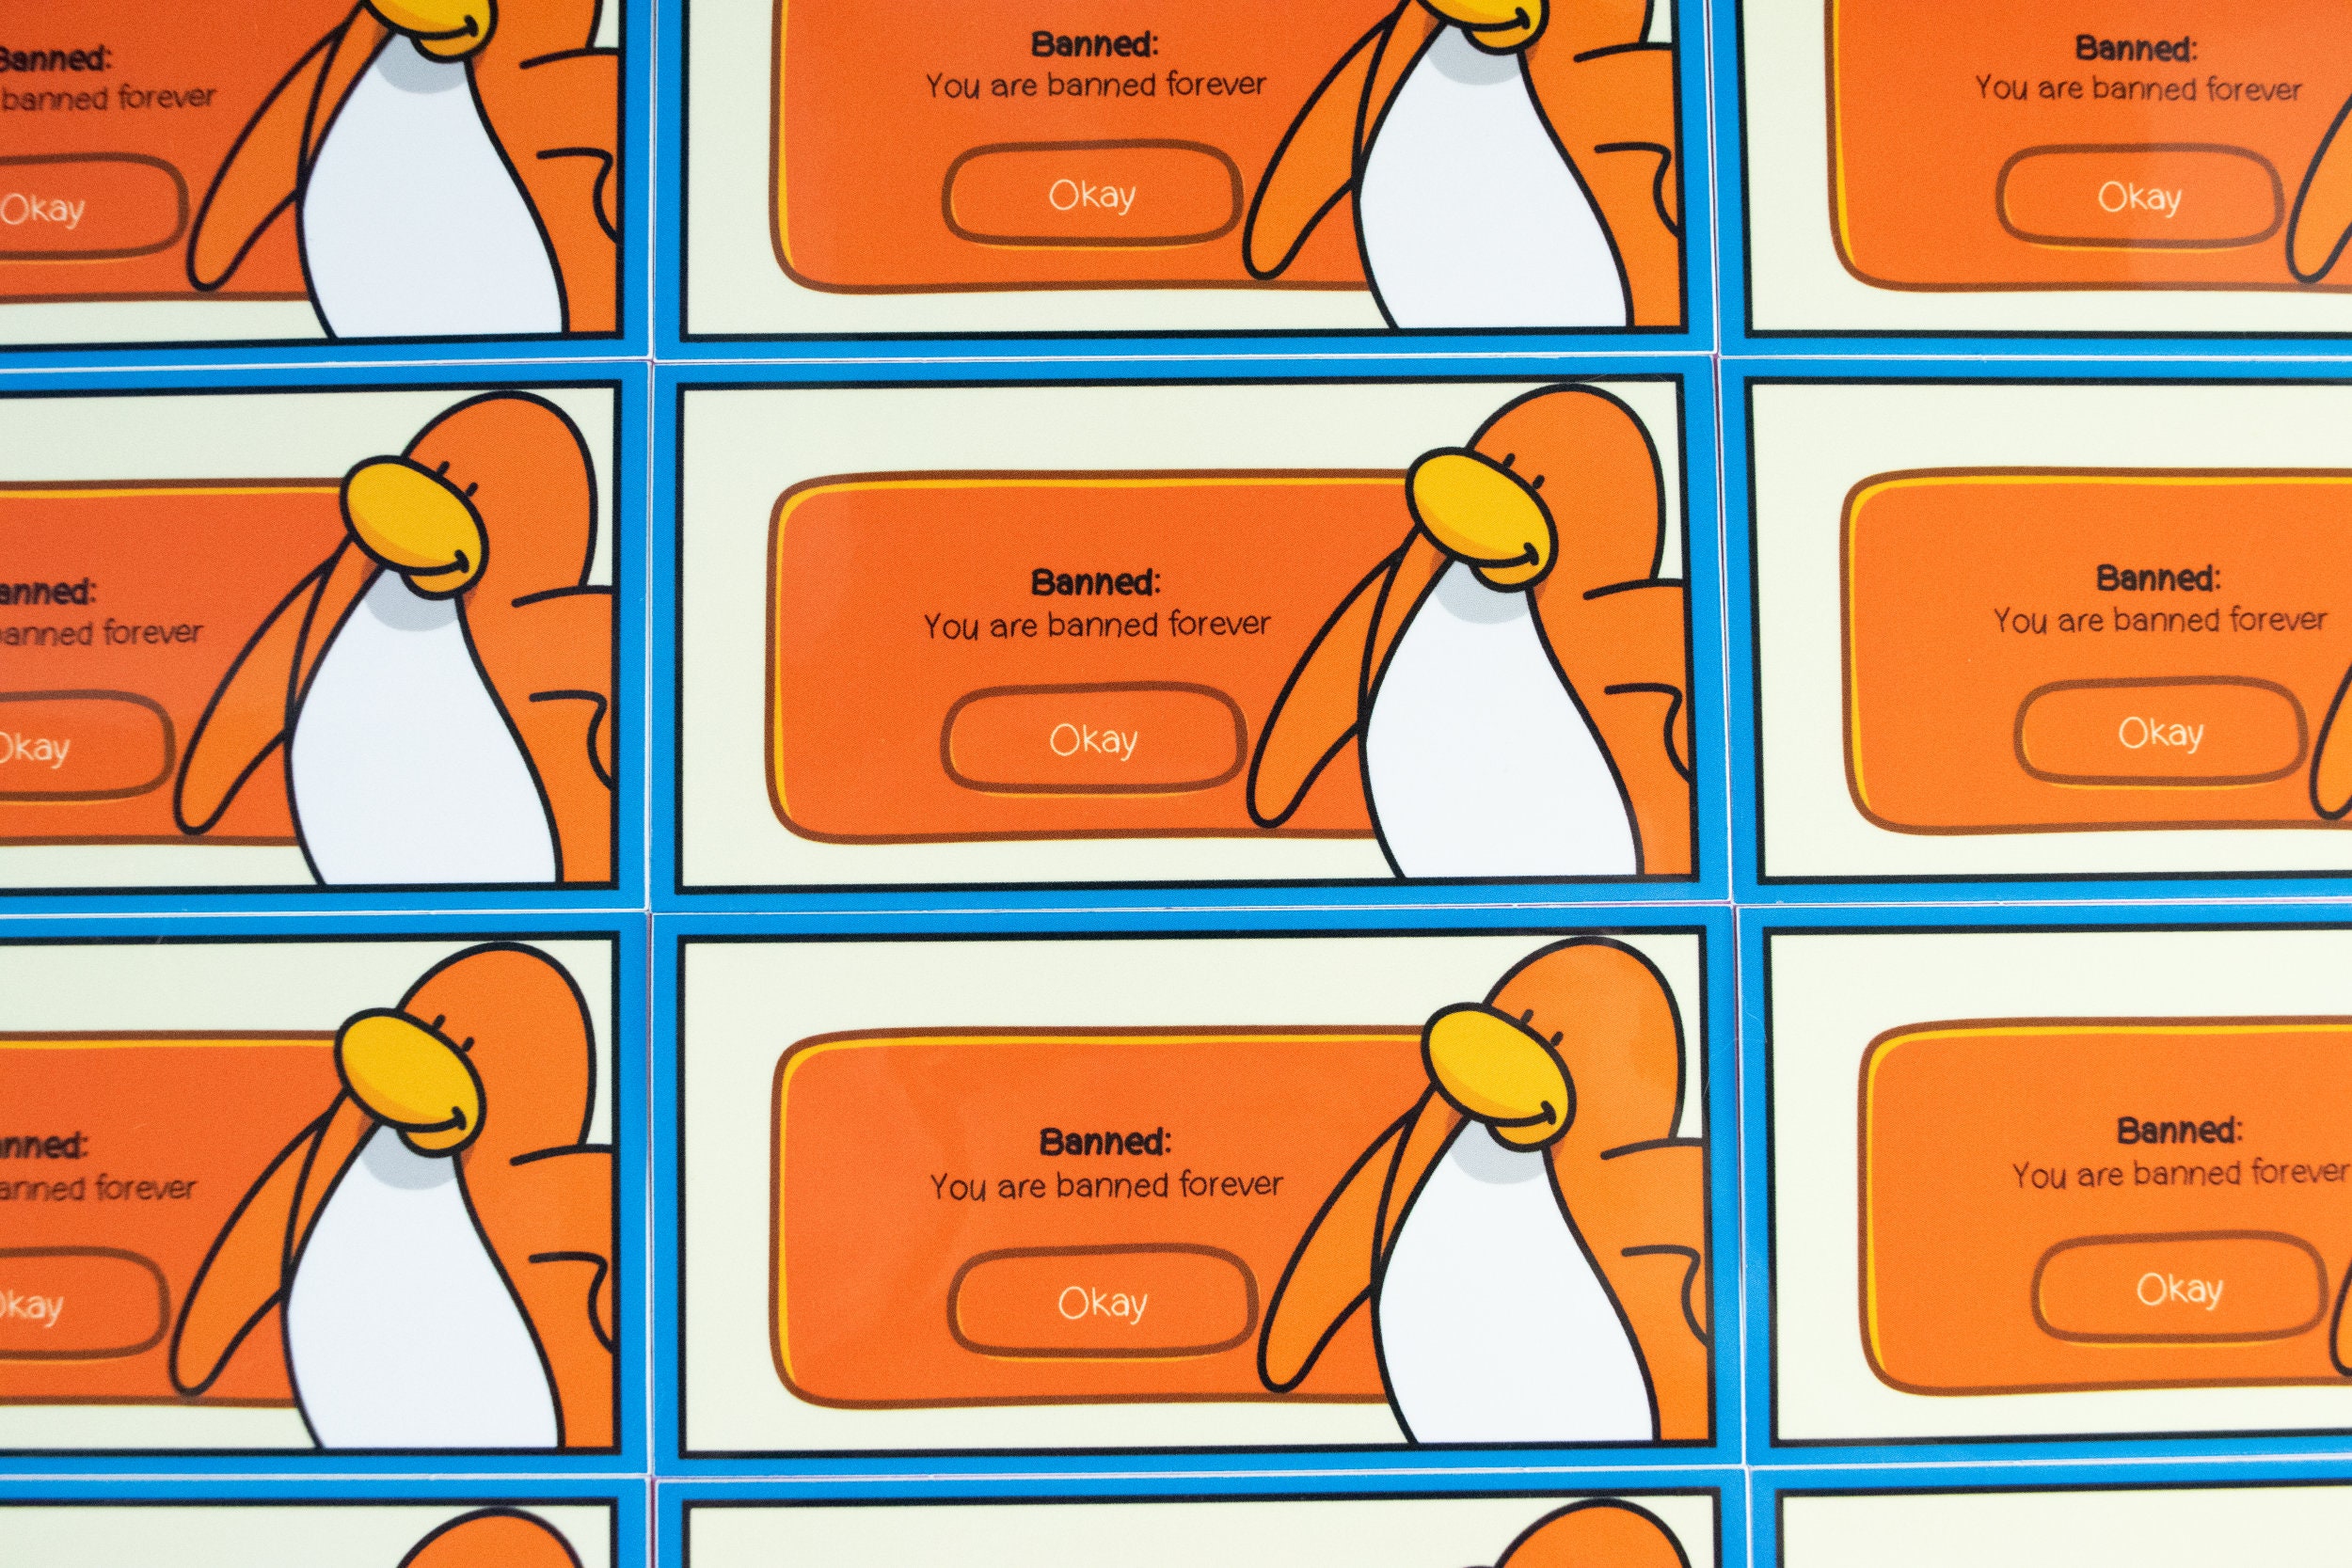 funny club penguin ban comics